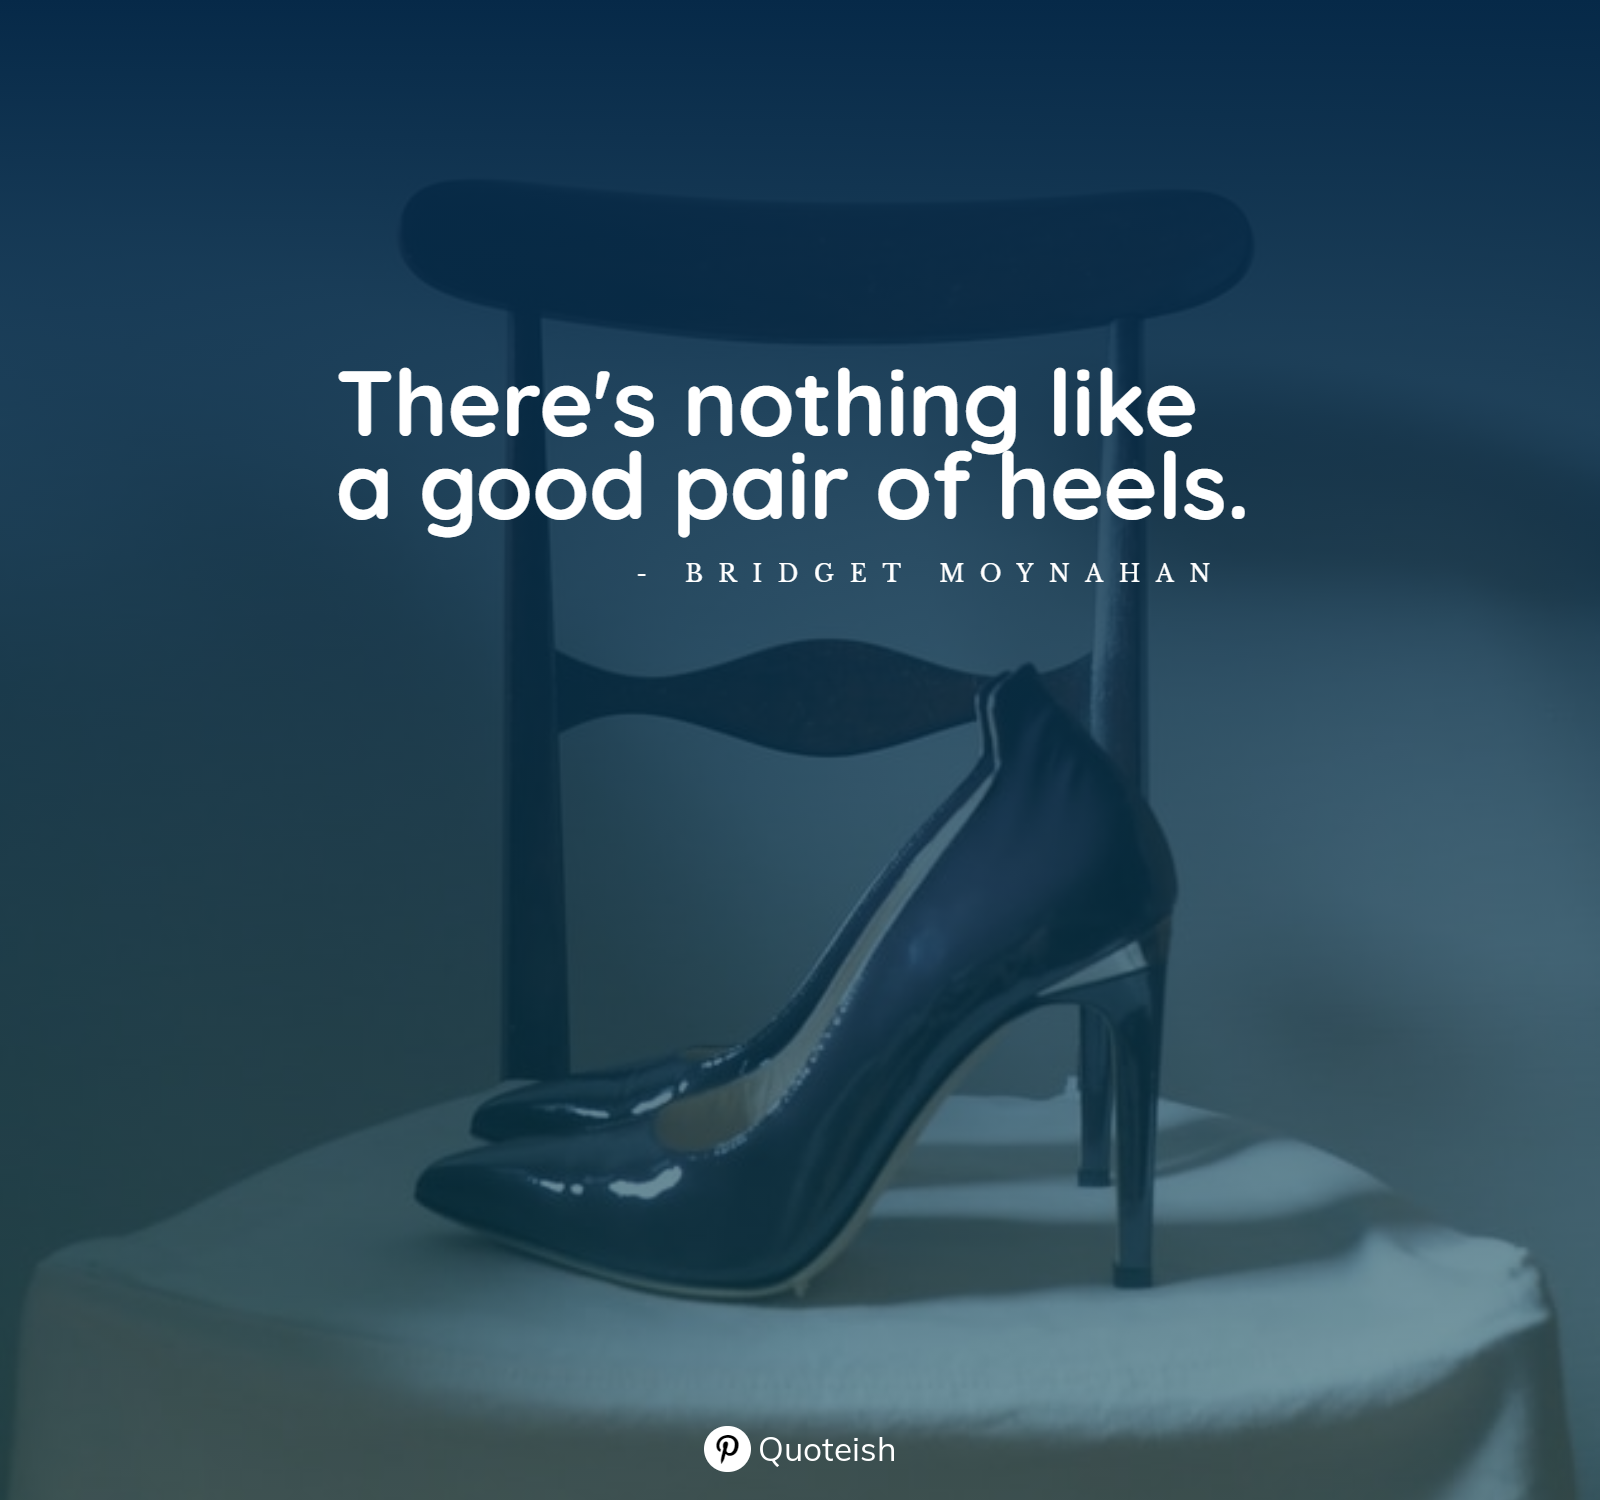 50 Best High Heels Quotes with Pics | Heels quotes, High heel quotes, Heels